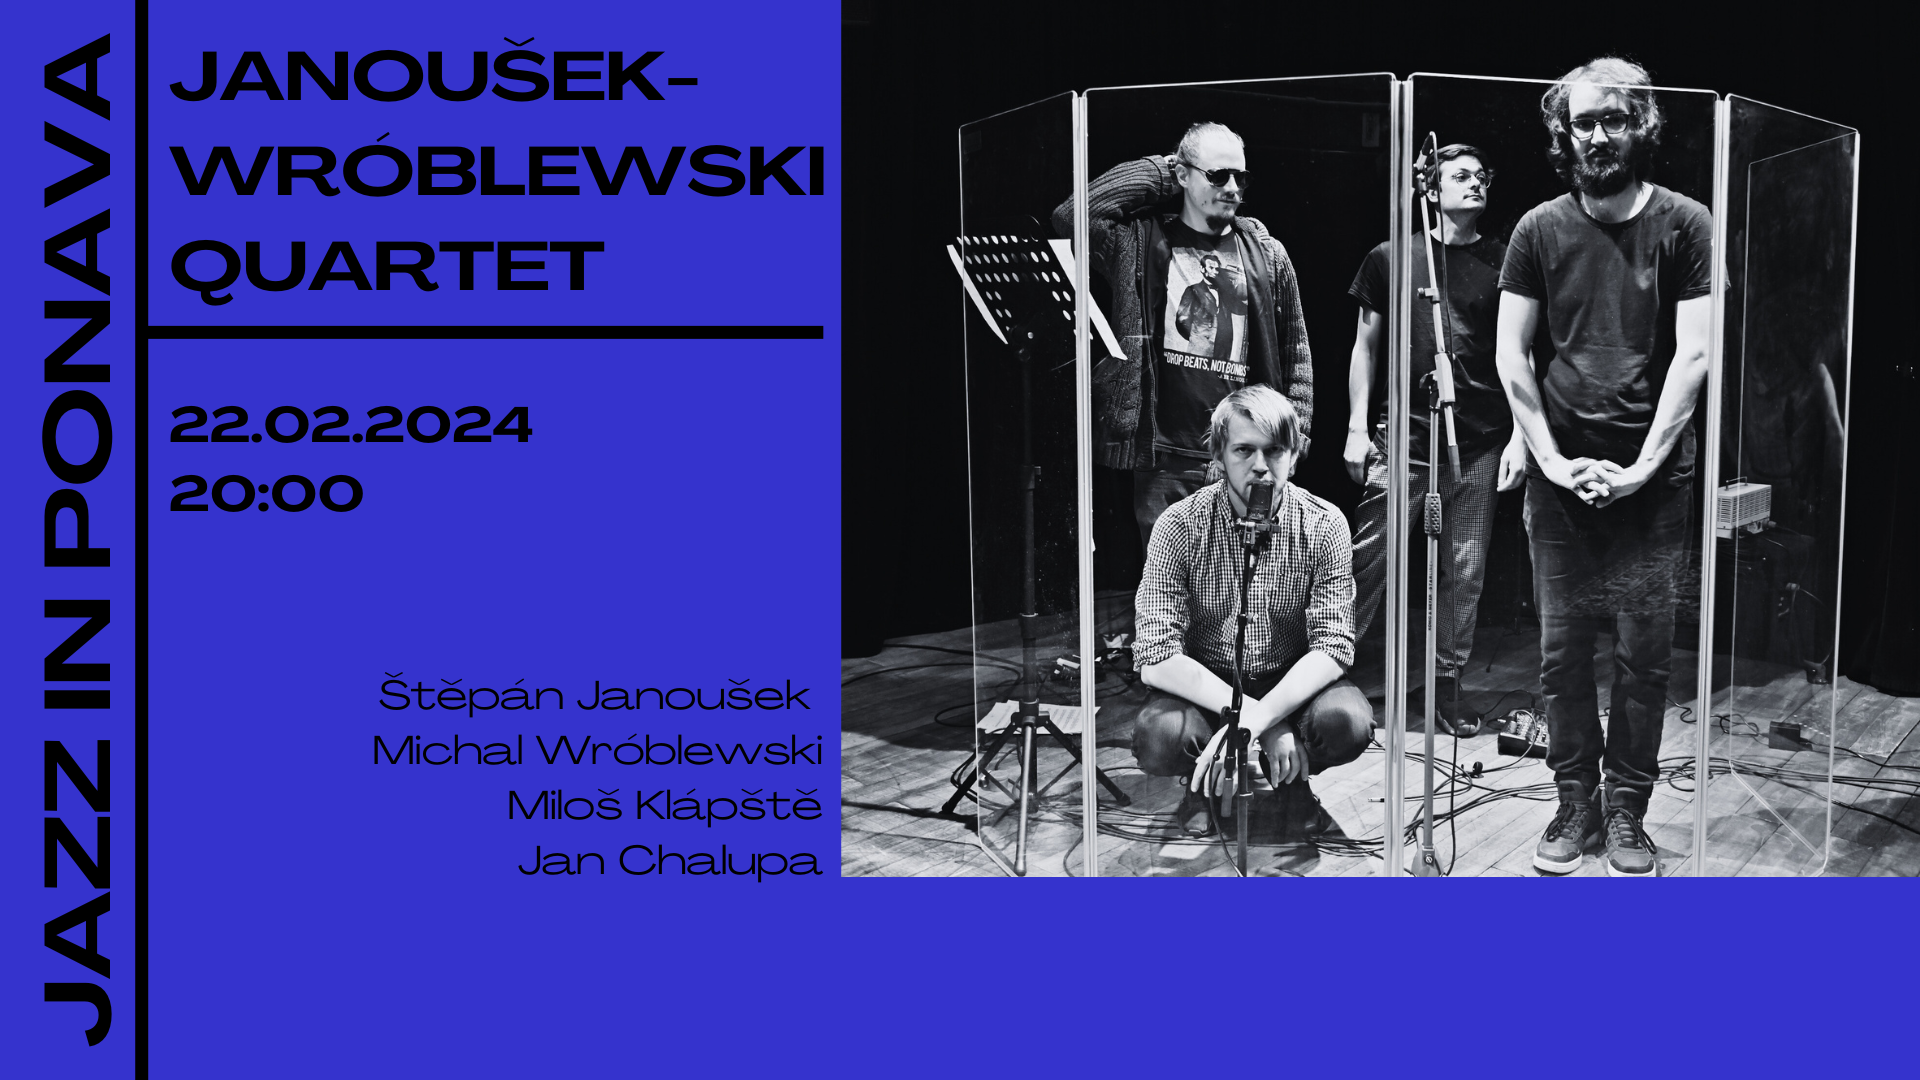 Janoušek-Wróblewski Quartet